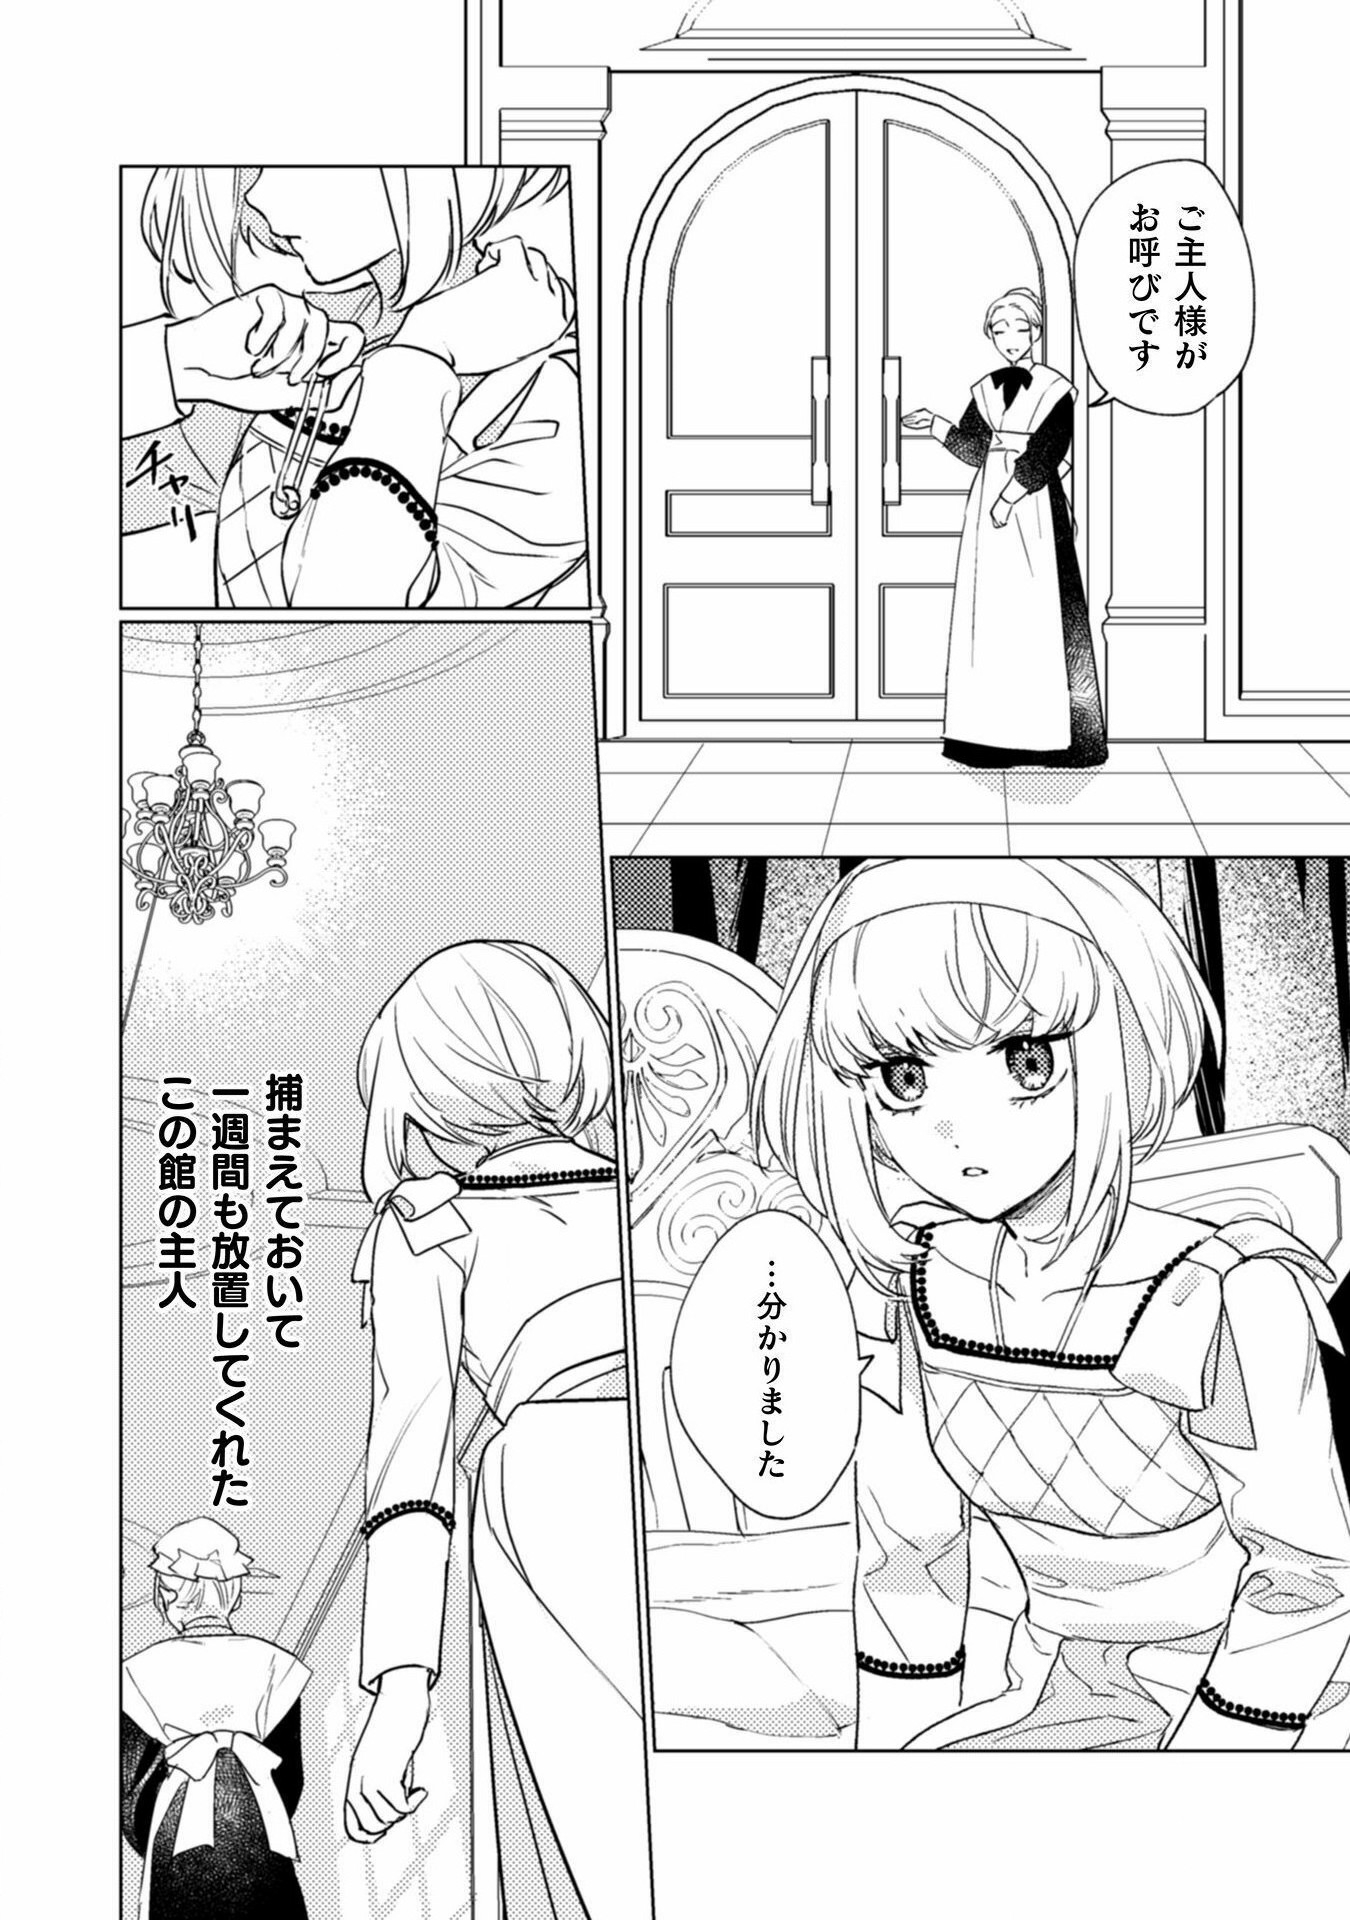 Uranaishi ni wa Hana Kishi no Koigokoro ga Mieteimasu - Chapter 17 - Page 24